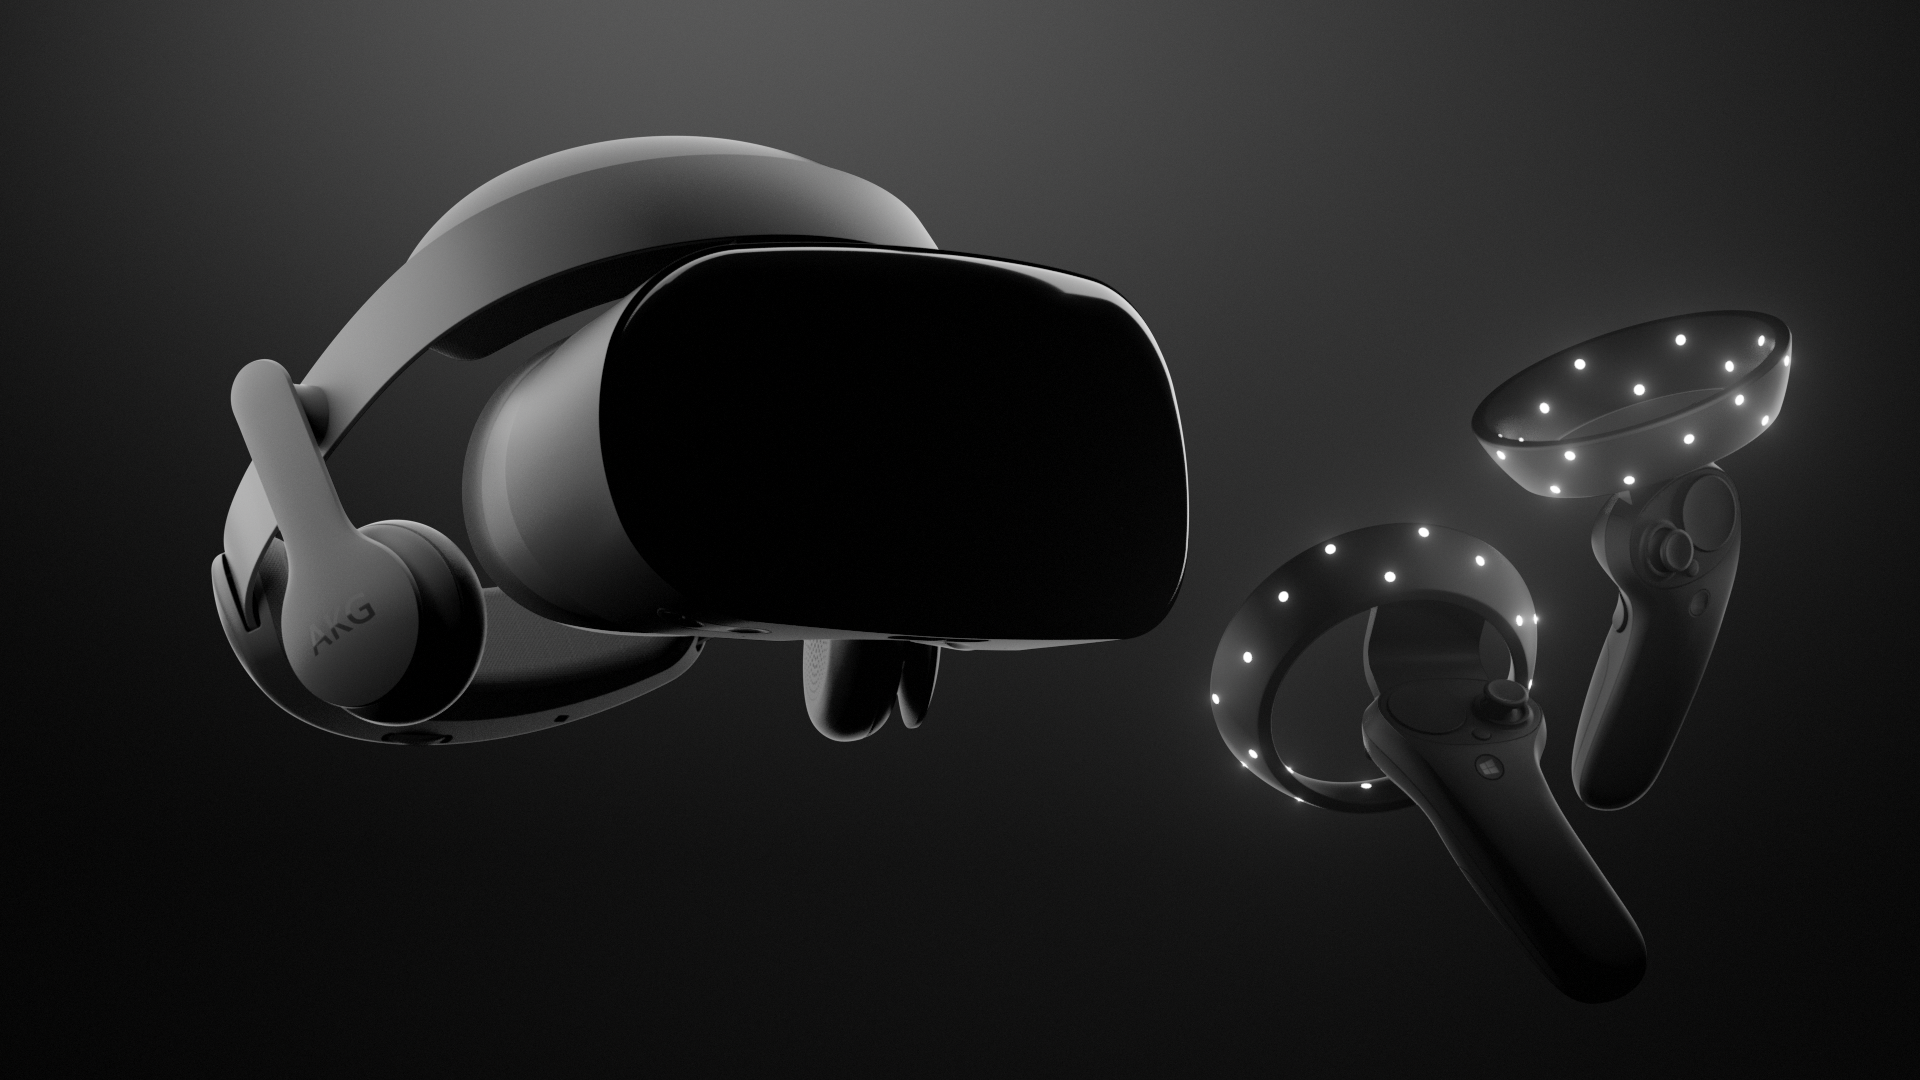 Samsung ha presentado oficialmente el headset de realidad mixta Odyssey